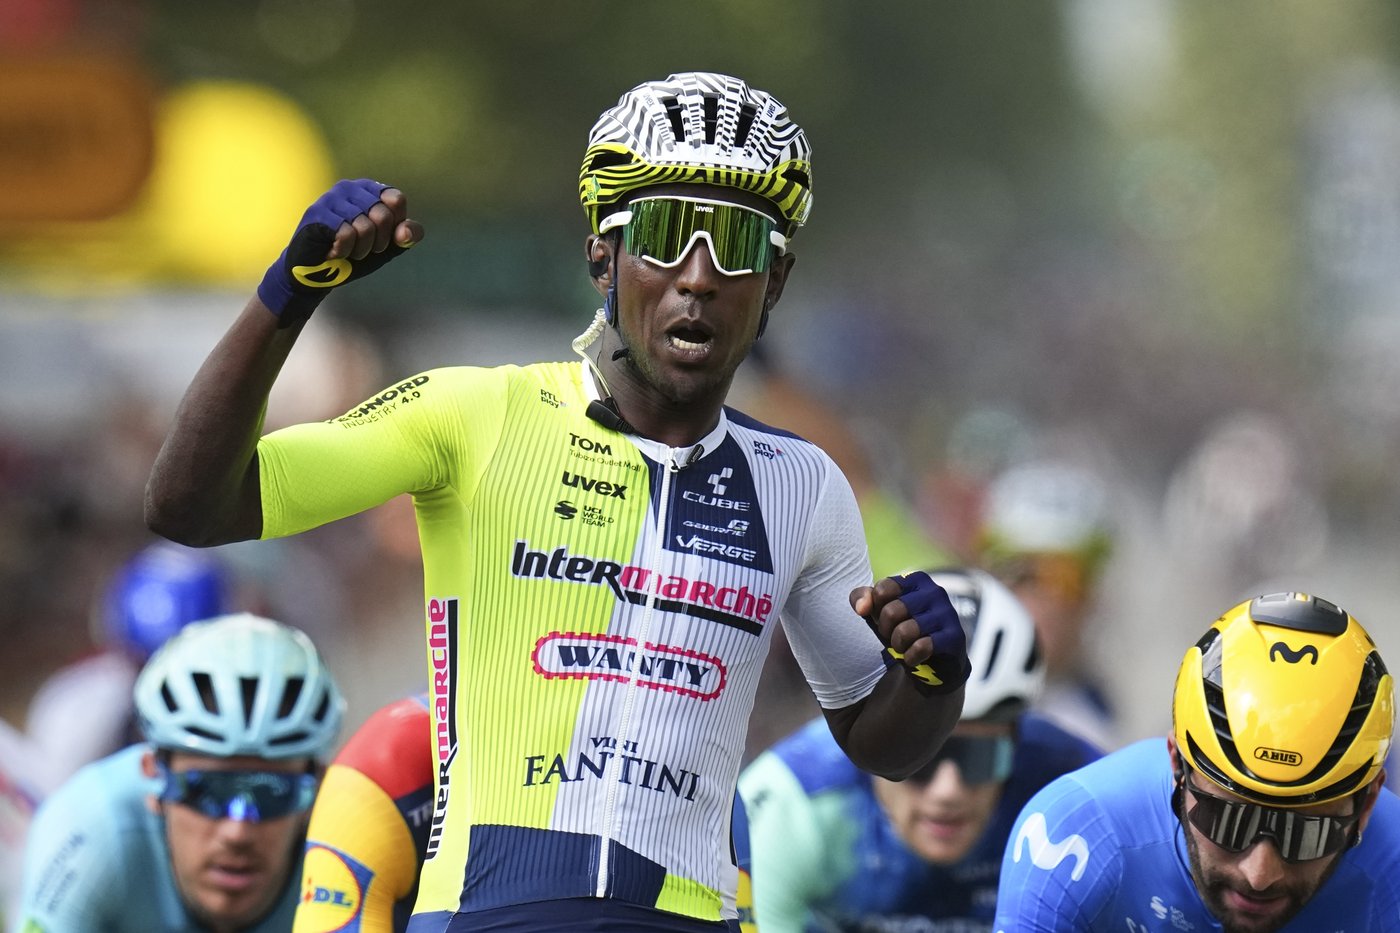 L’Érythréen Biniam Girmay  signe une victoire historique au Tour de France